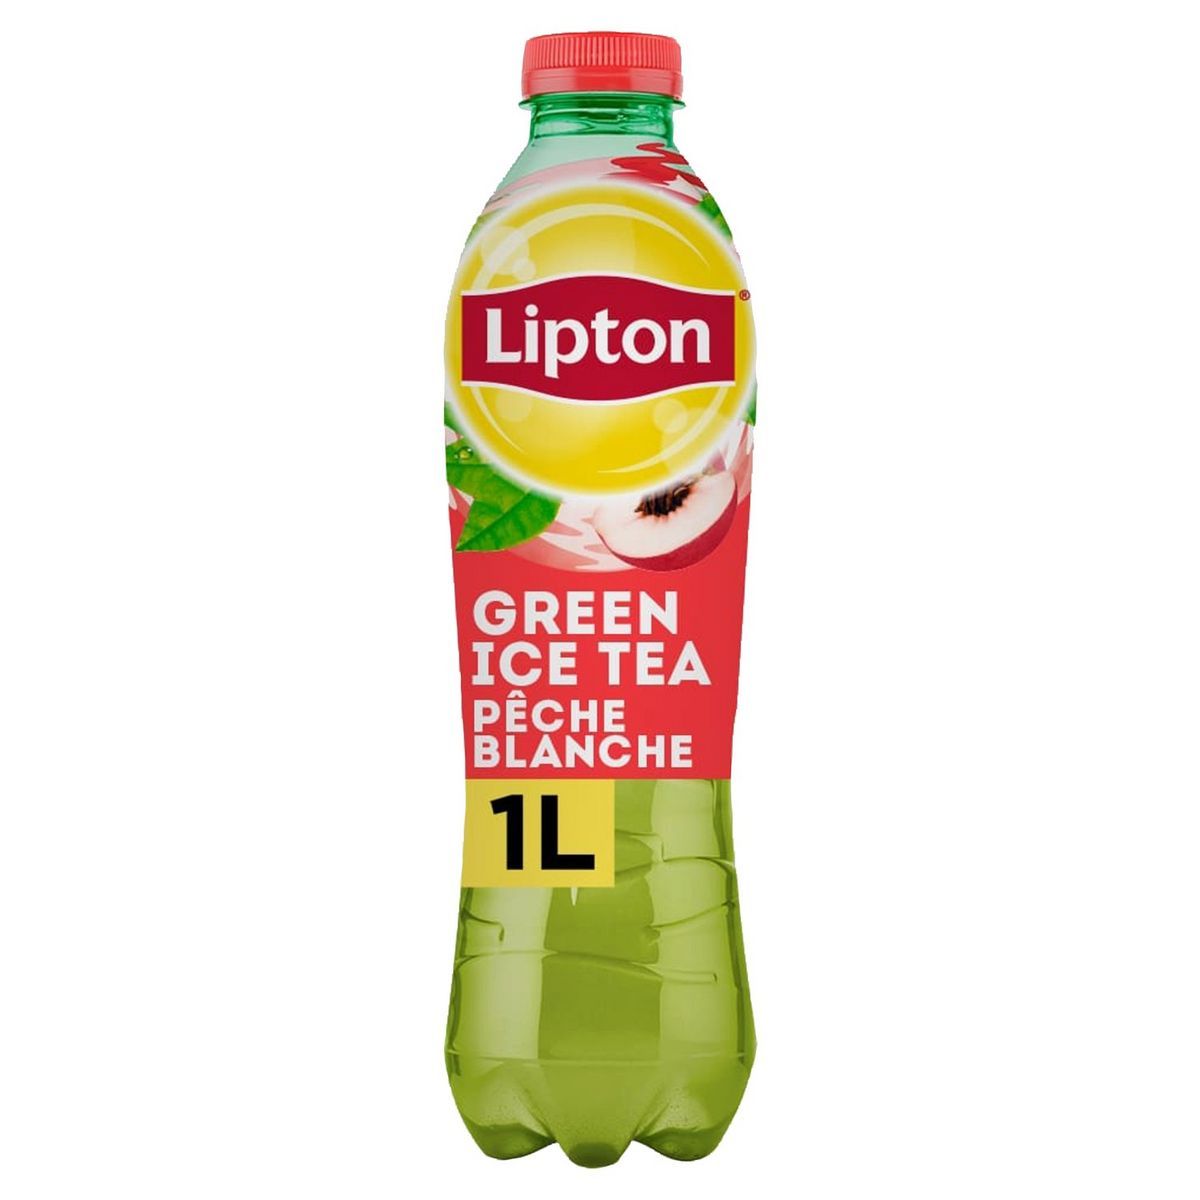 LIPTON GREEN ICE TEA